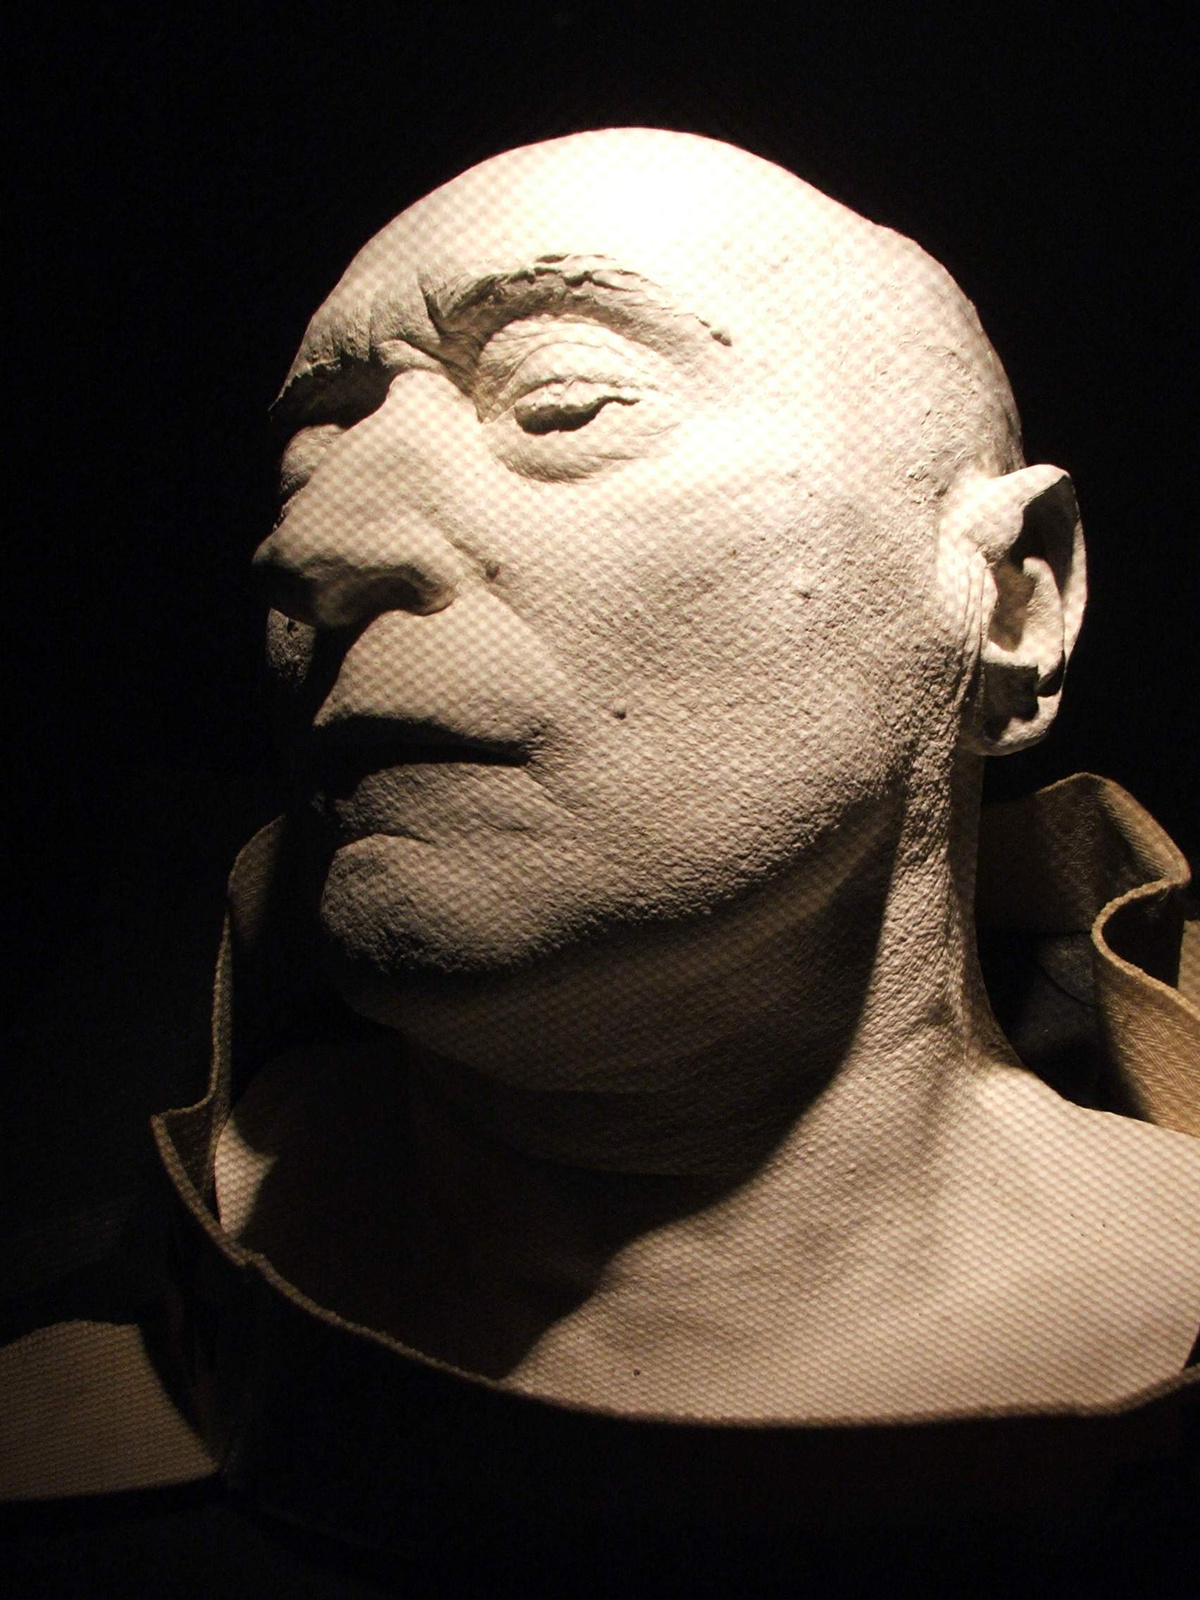 Esztergom-Mindszenty death mask